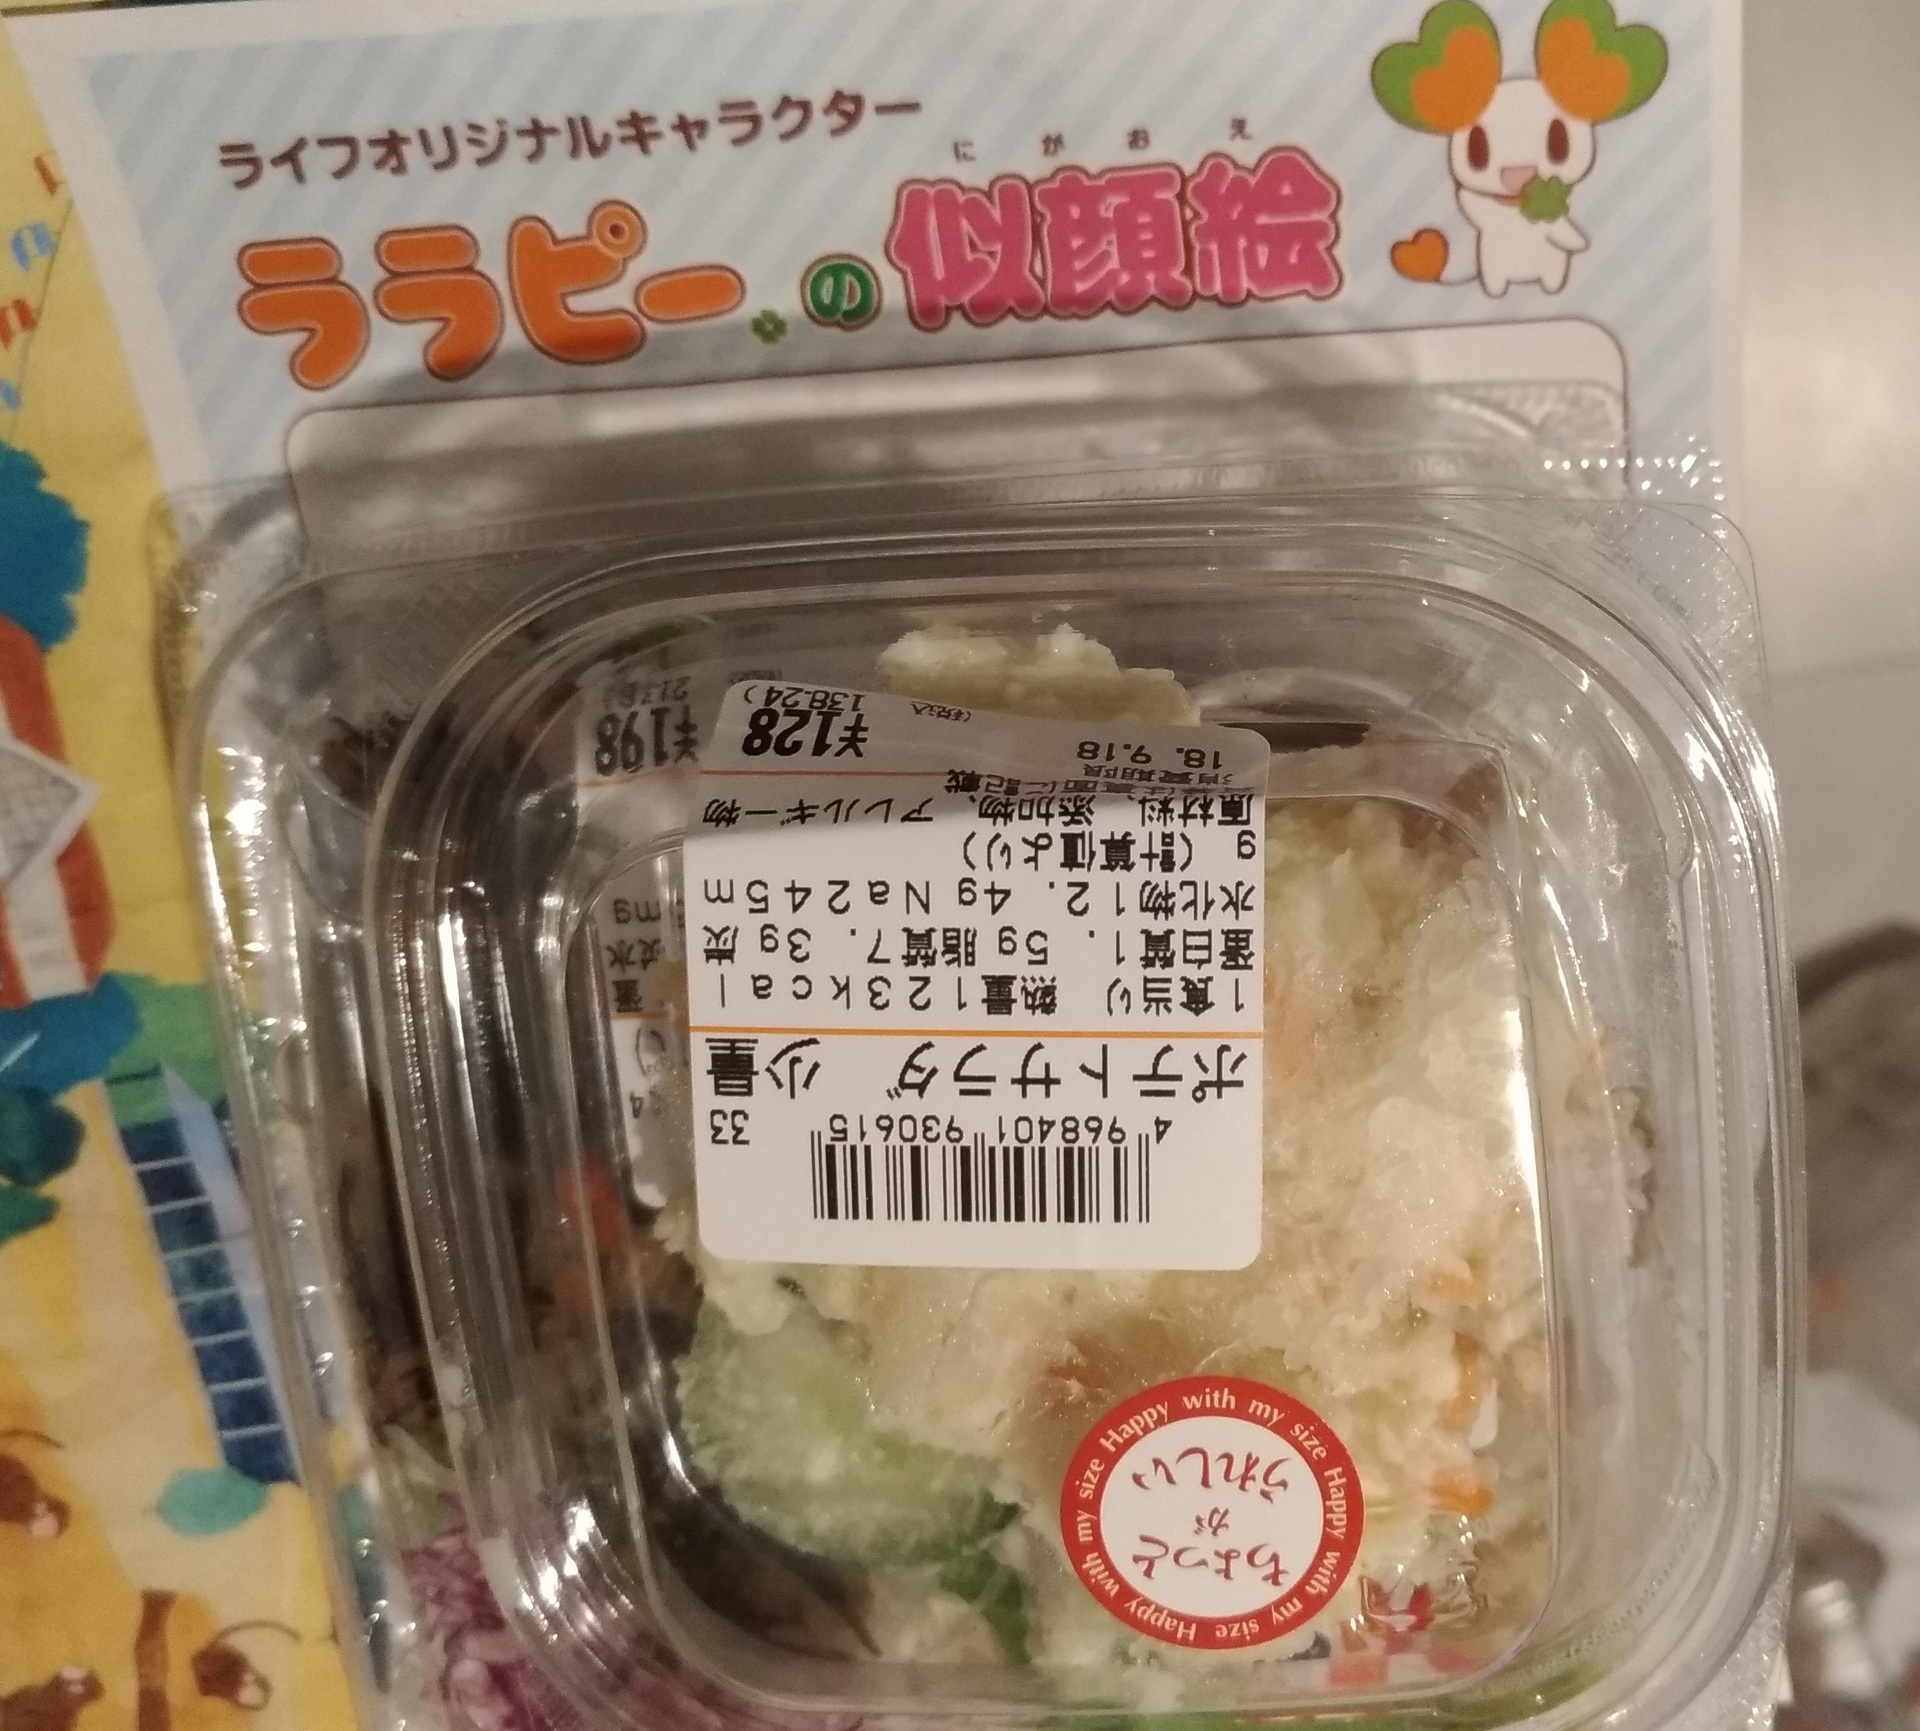 スーパーライフサラダ ポテトサラダ少量他のサラダお弁当と共に スーパーライフ 大阪おすすめお惣菜野菜をブログでポイントも